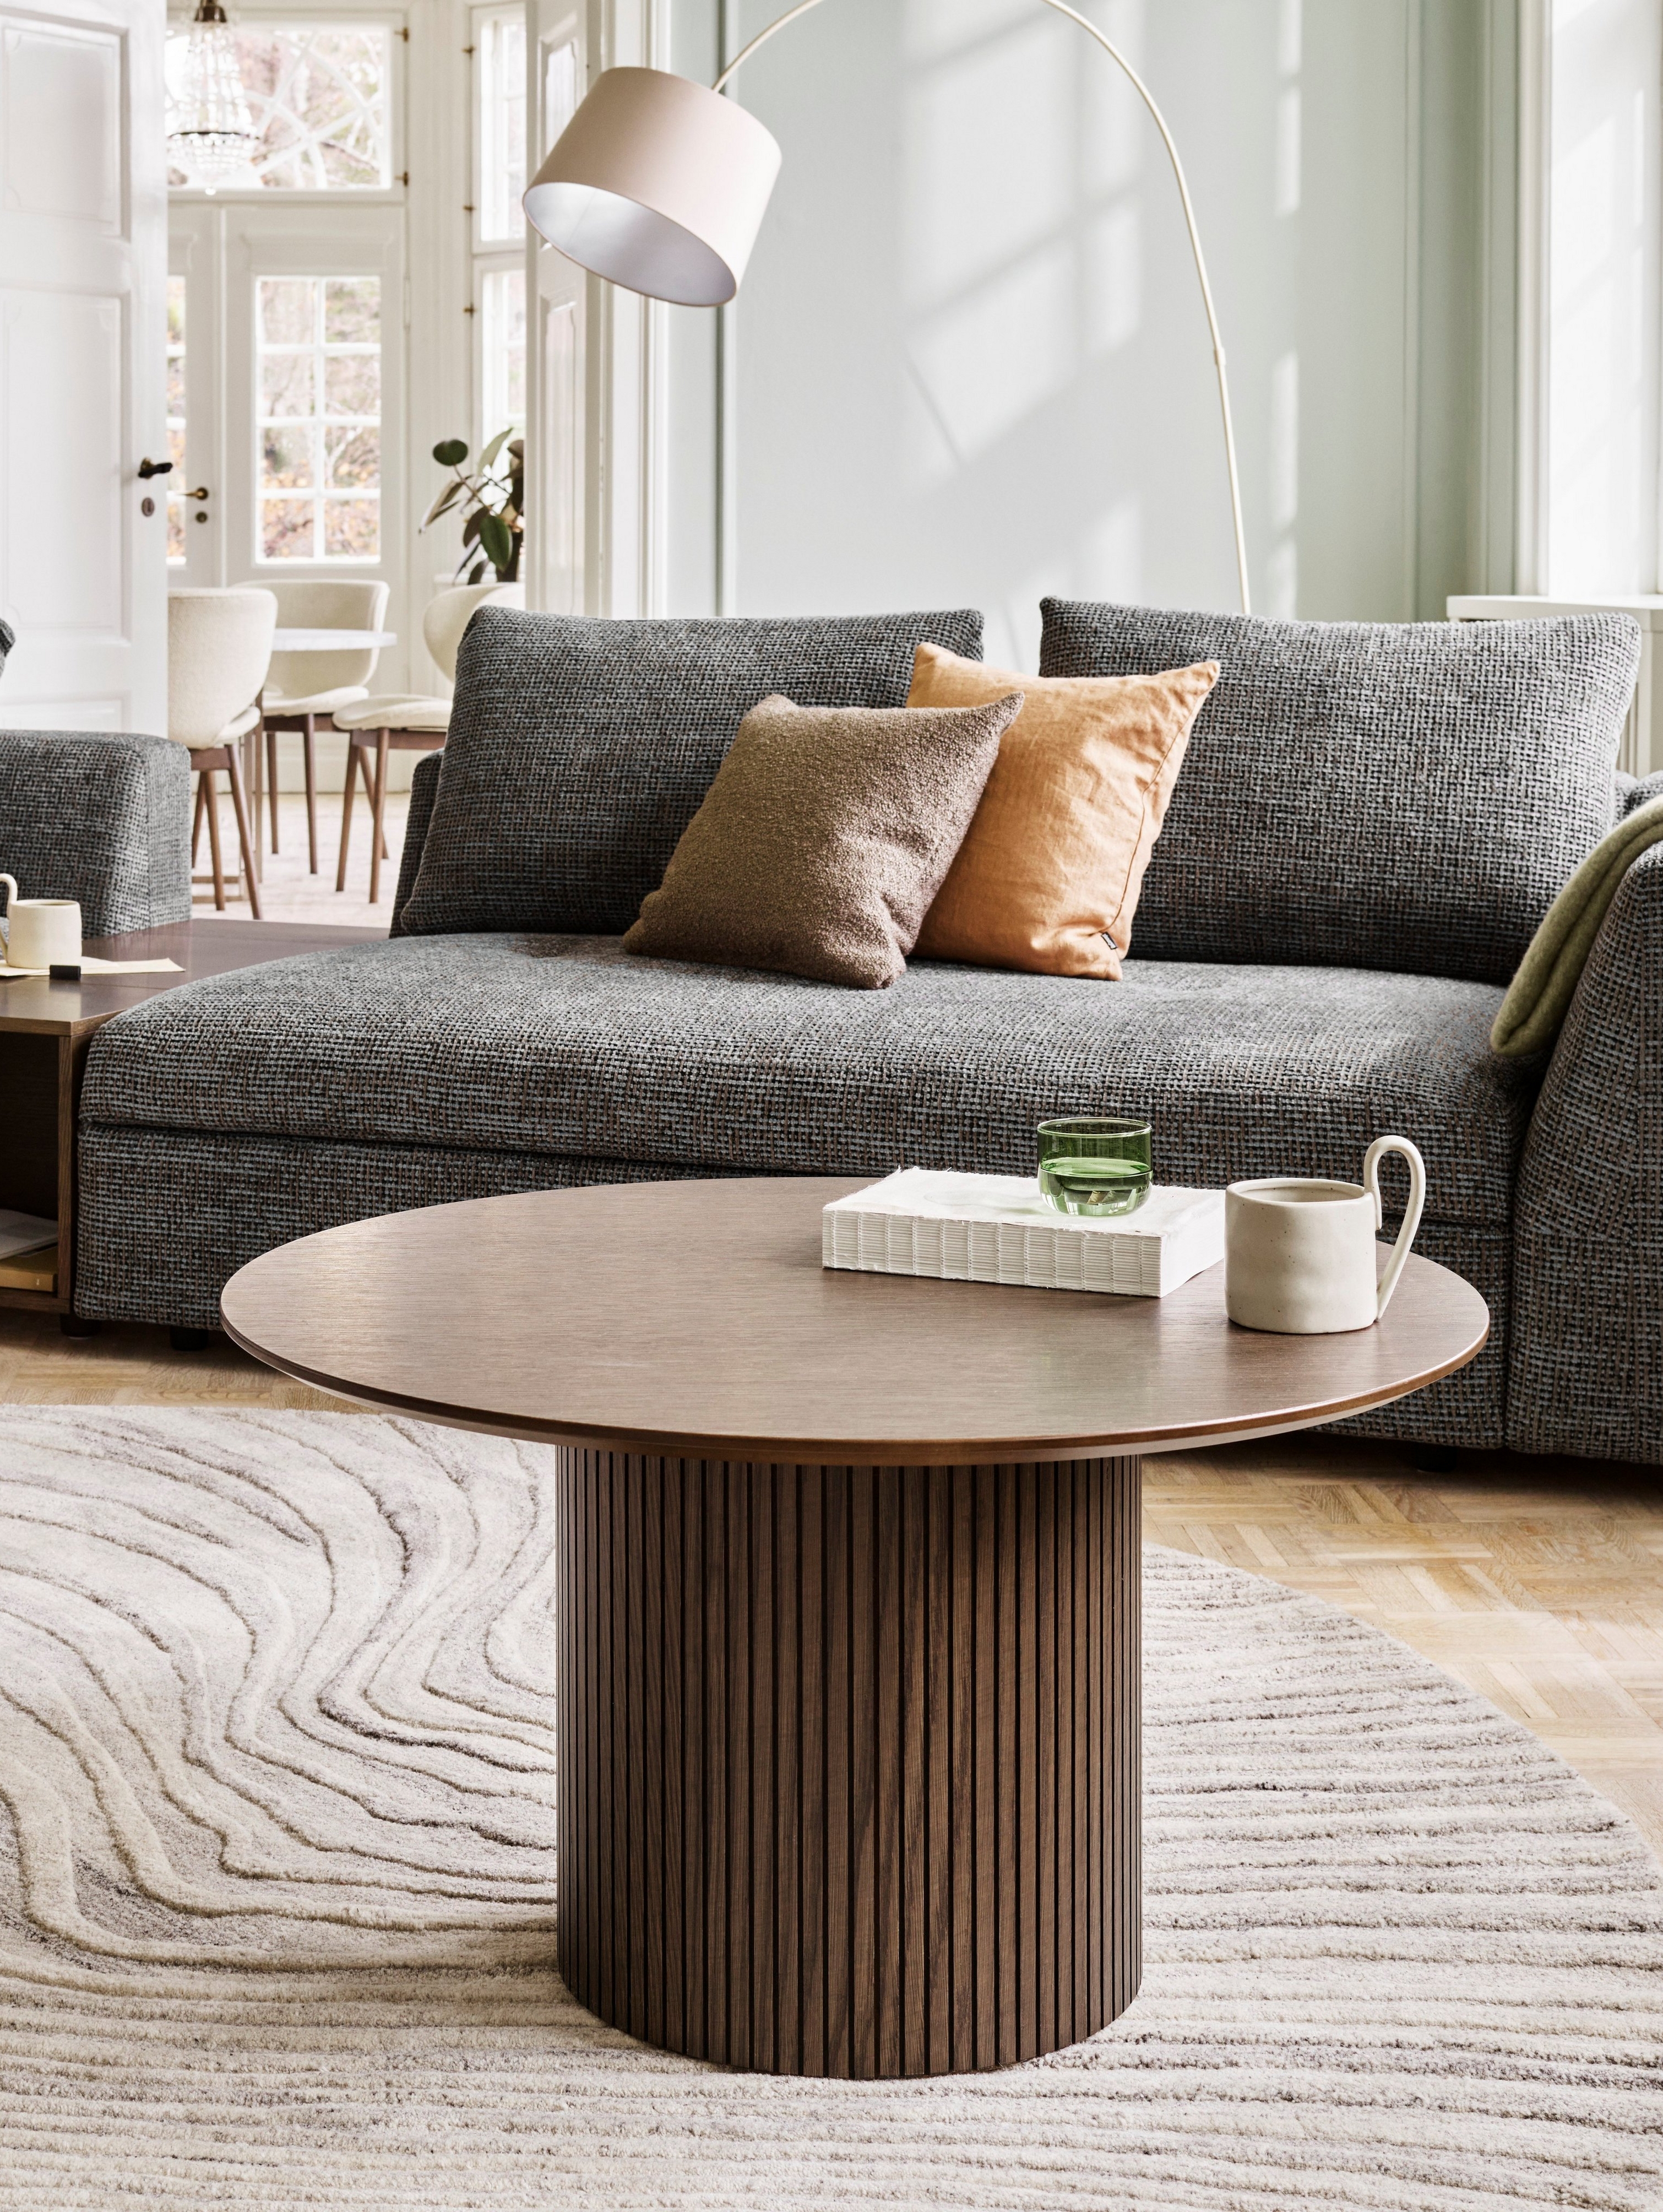 採用 Bergamo 沙發和 Santiago 咖啡桌的溫馨起居空間。